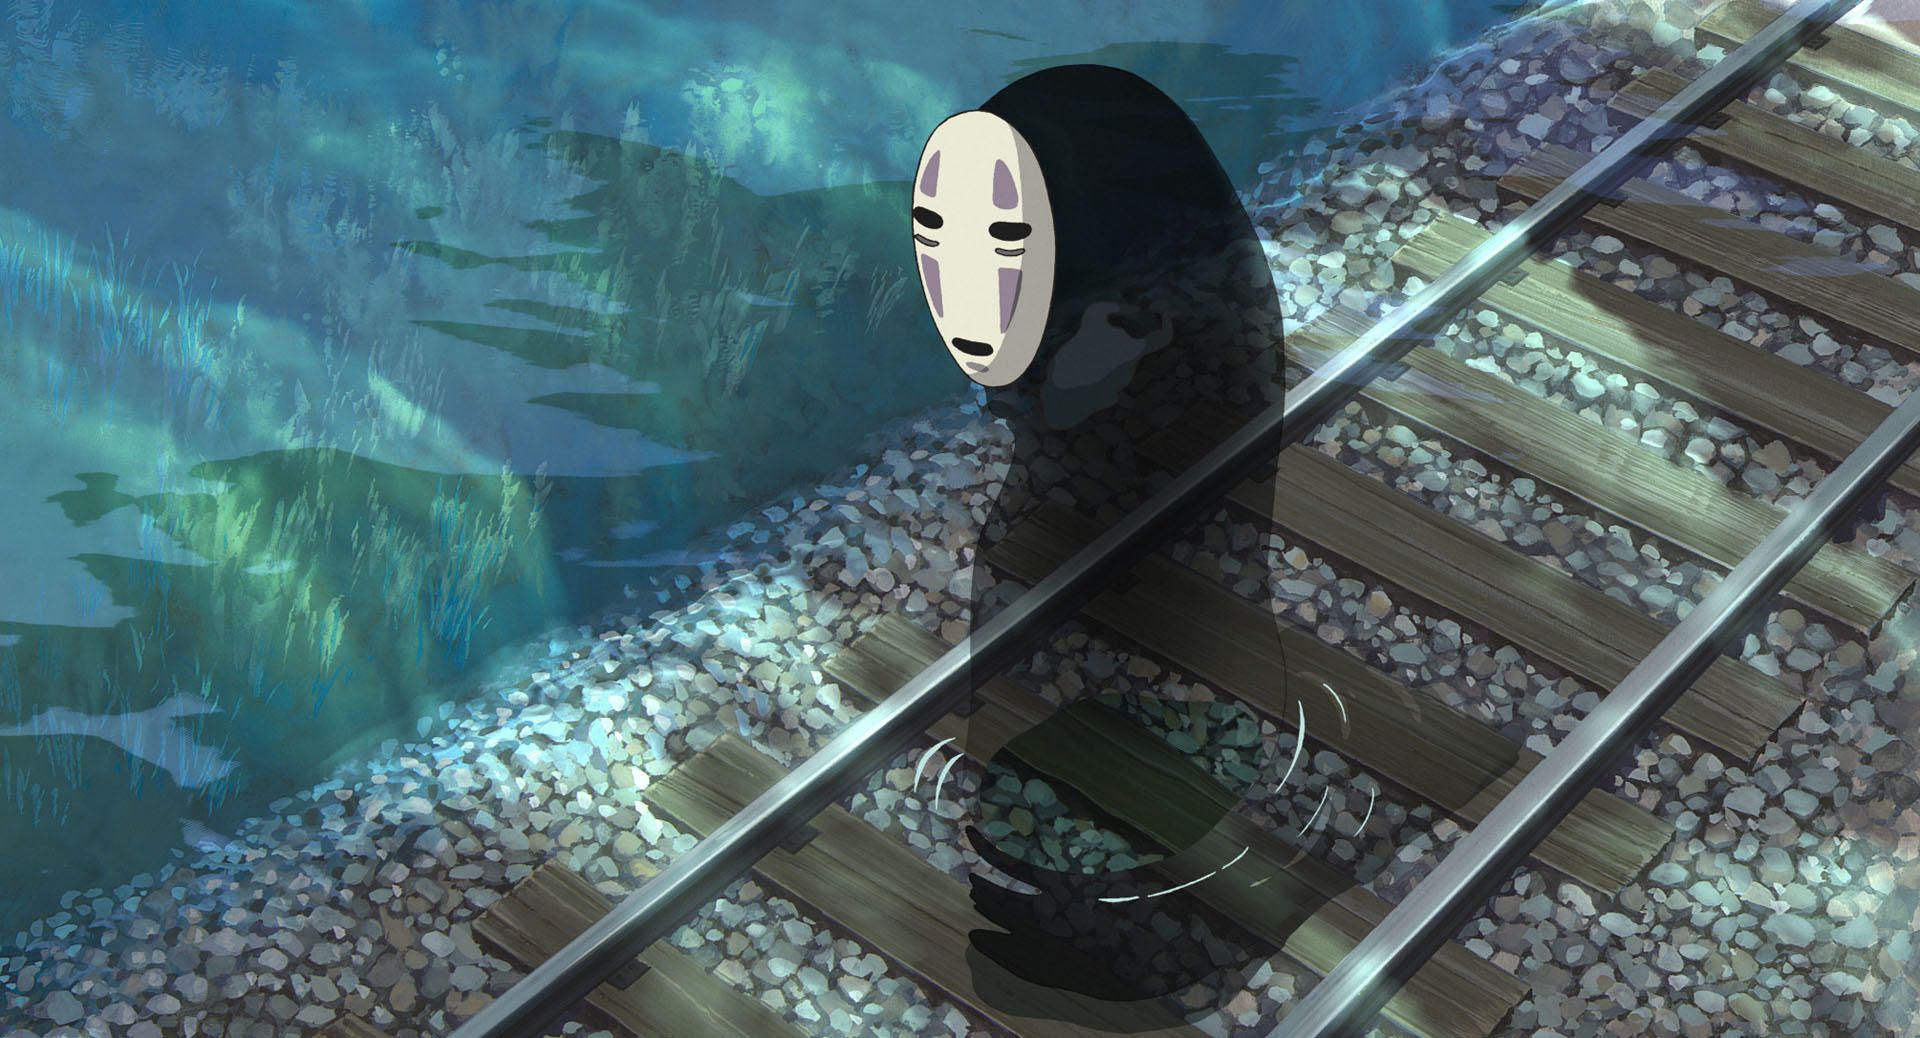 Studio Ghibli Aesthetic Wallpapers - Wallpaper Cave